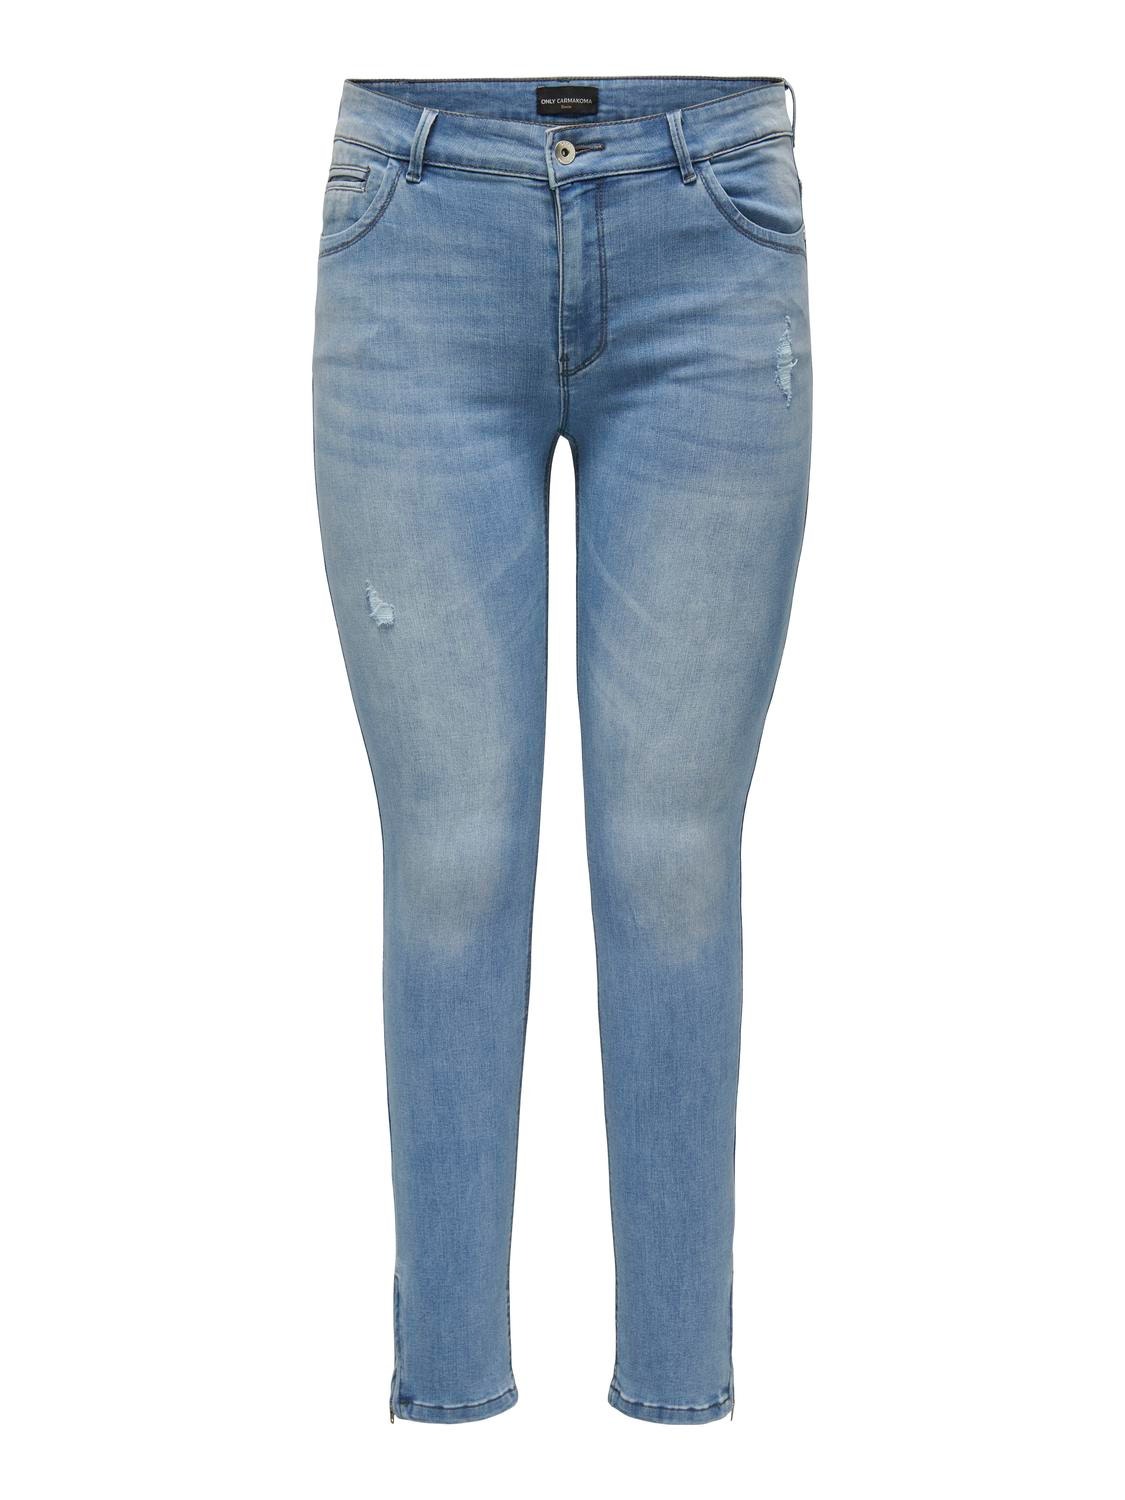 ONLY Jeans Skinny Fit Curve -Light Blue Denim - 15330714